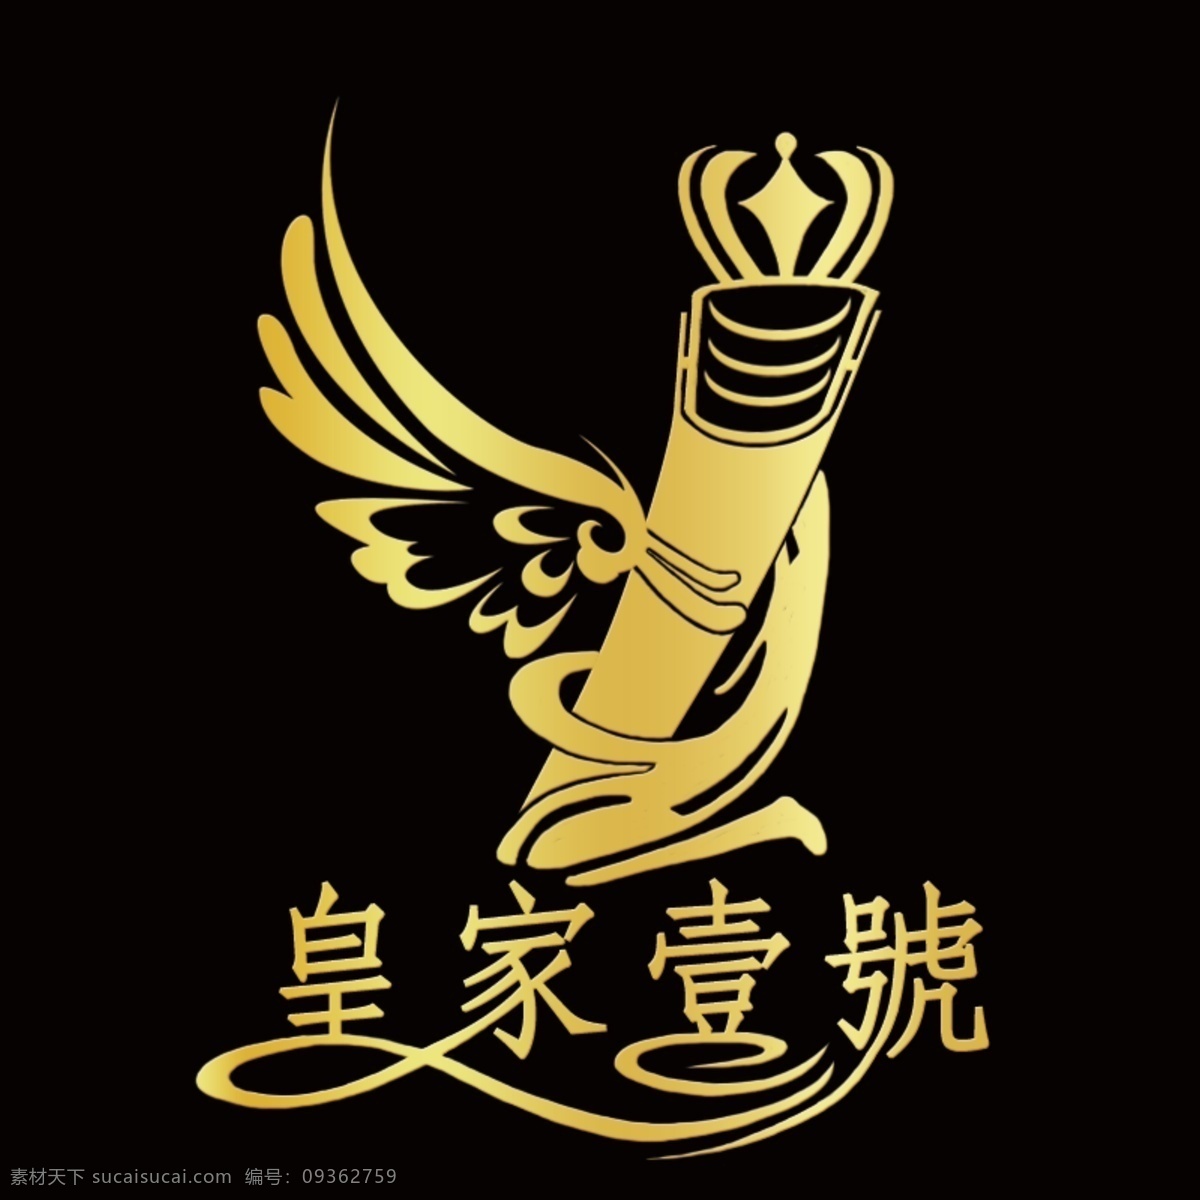 logo设计 皇家壹号 logo 创意 design 皇家 壹 号 标志设计 标志图标 其他图标